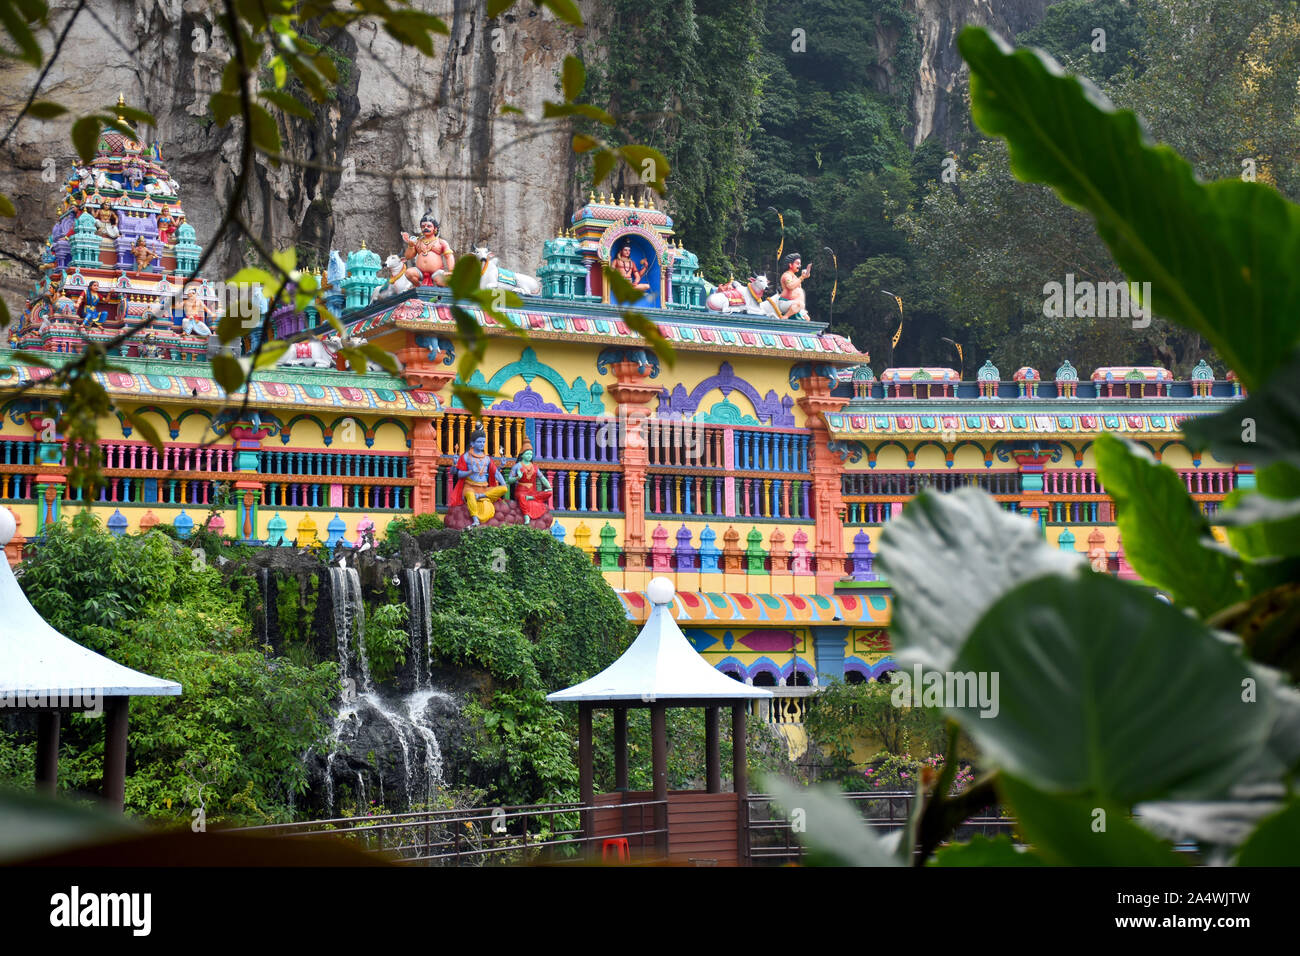 Gombak, Selangor, Malaysia 08.14.2019: un piccolo lago che circonda la colorata architettura dravidico grotte decorate Villa a Grotte Batu Foto Stock